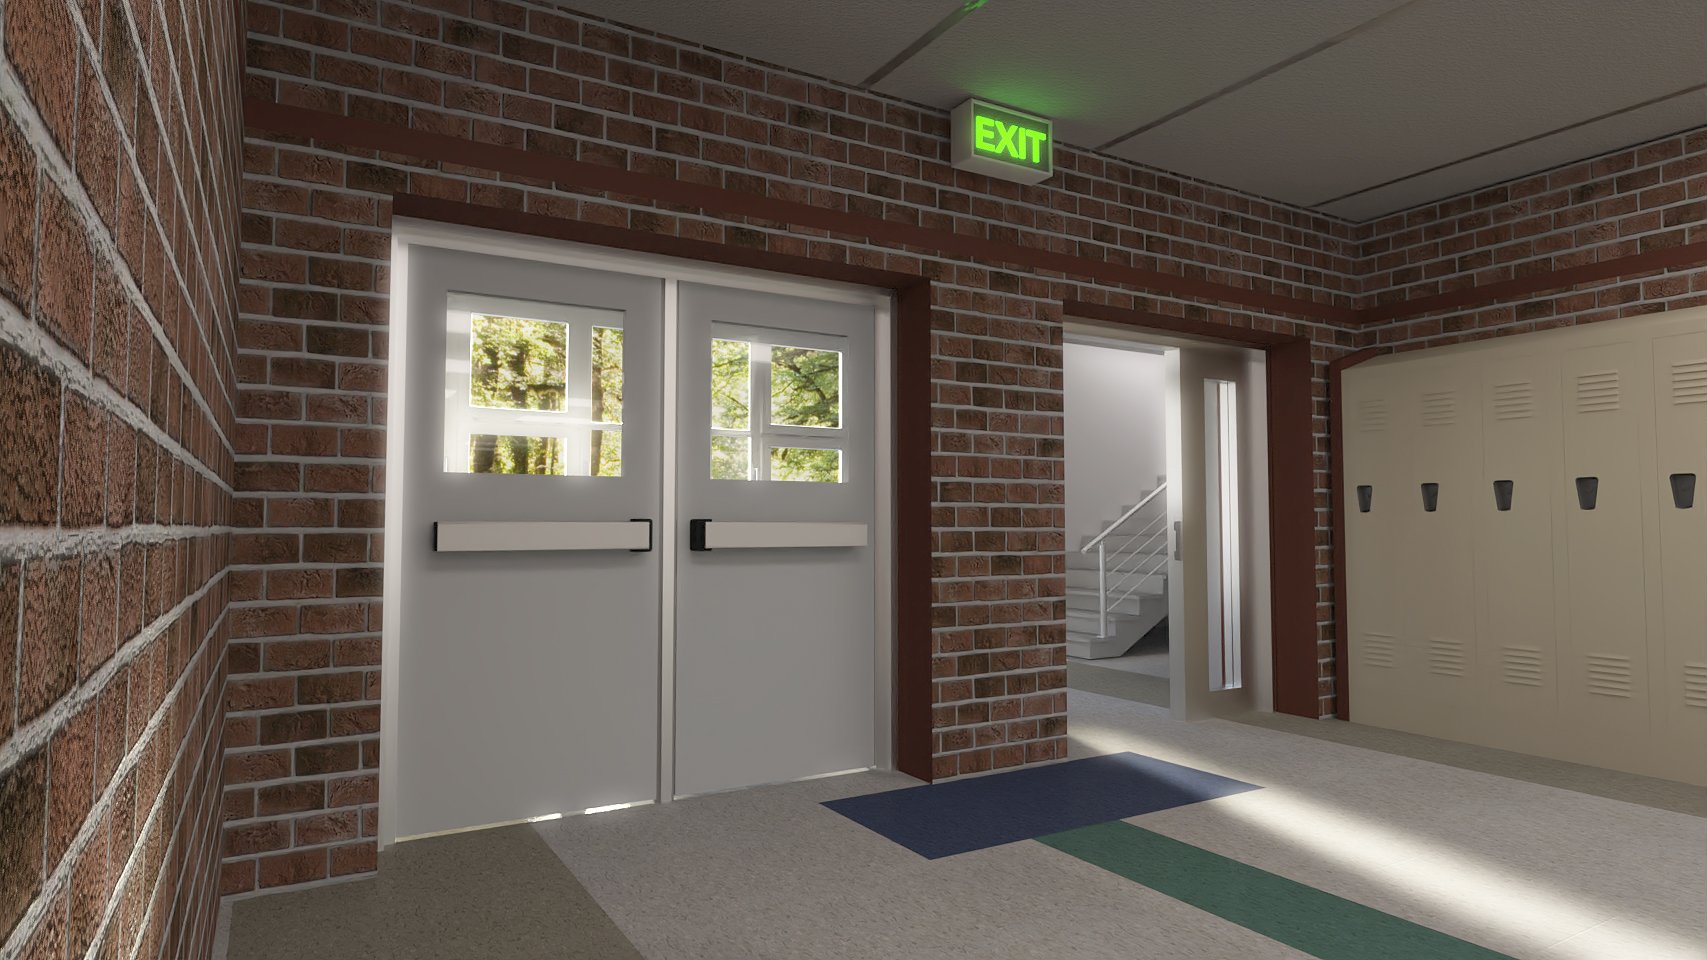 High School Hallway 2 by: Digitallab3D, 3D Models by Daz 3D